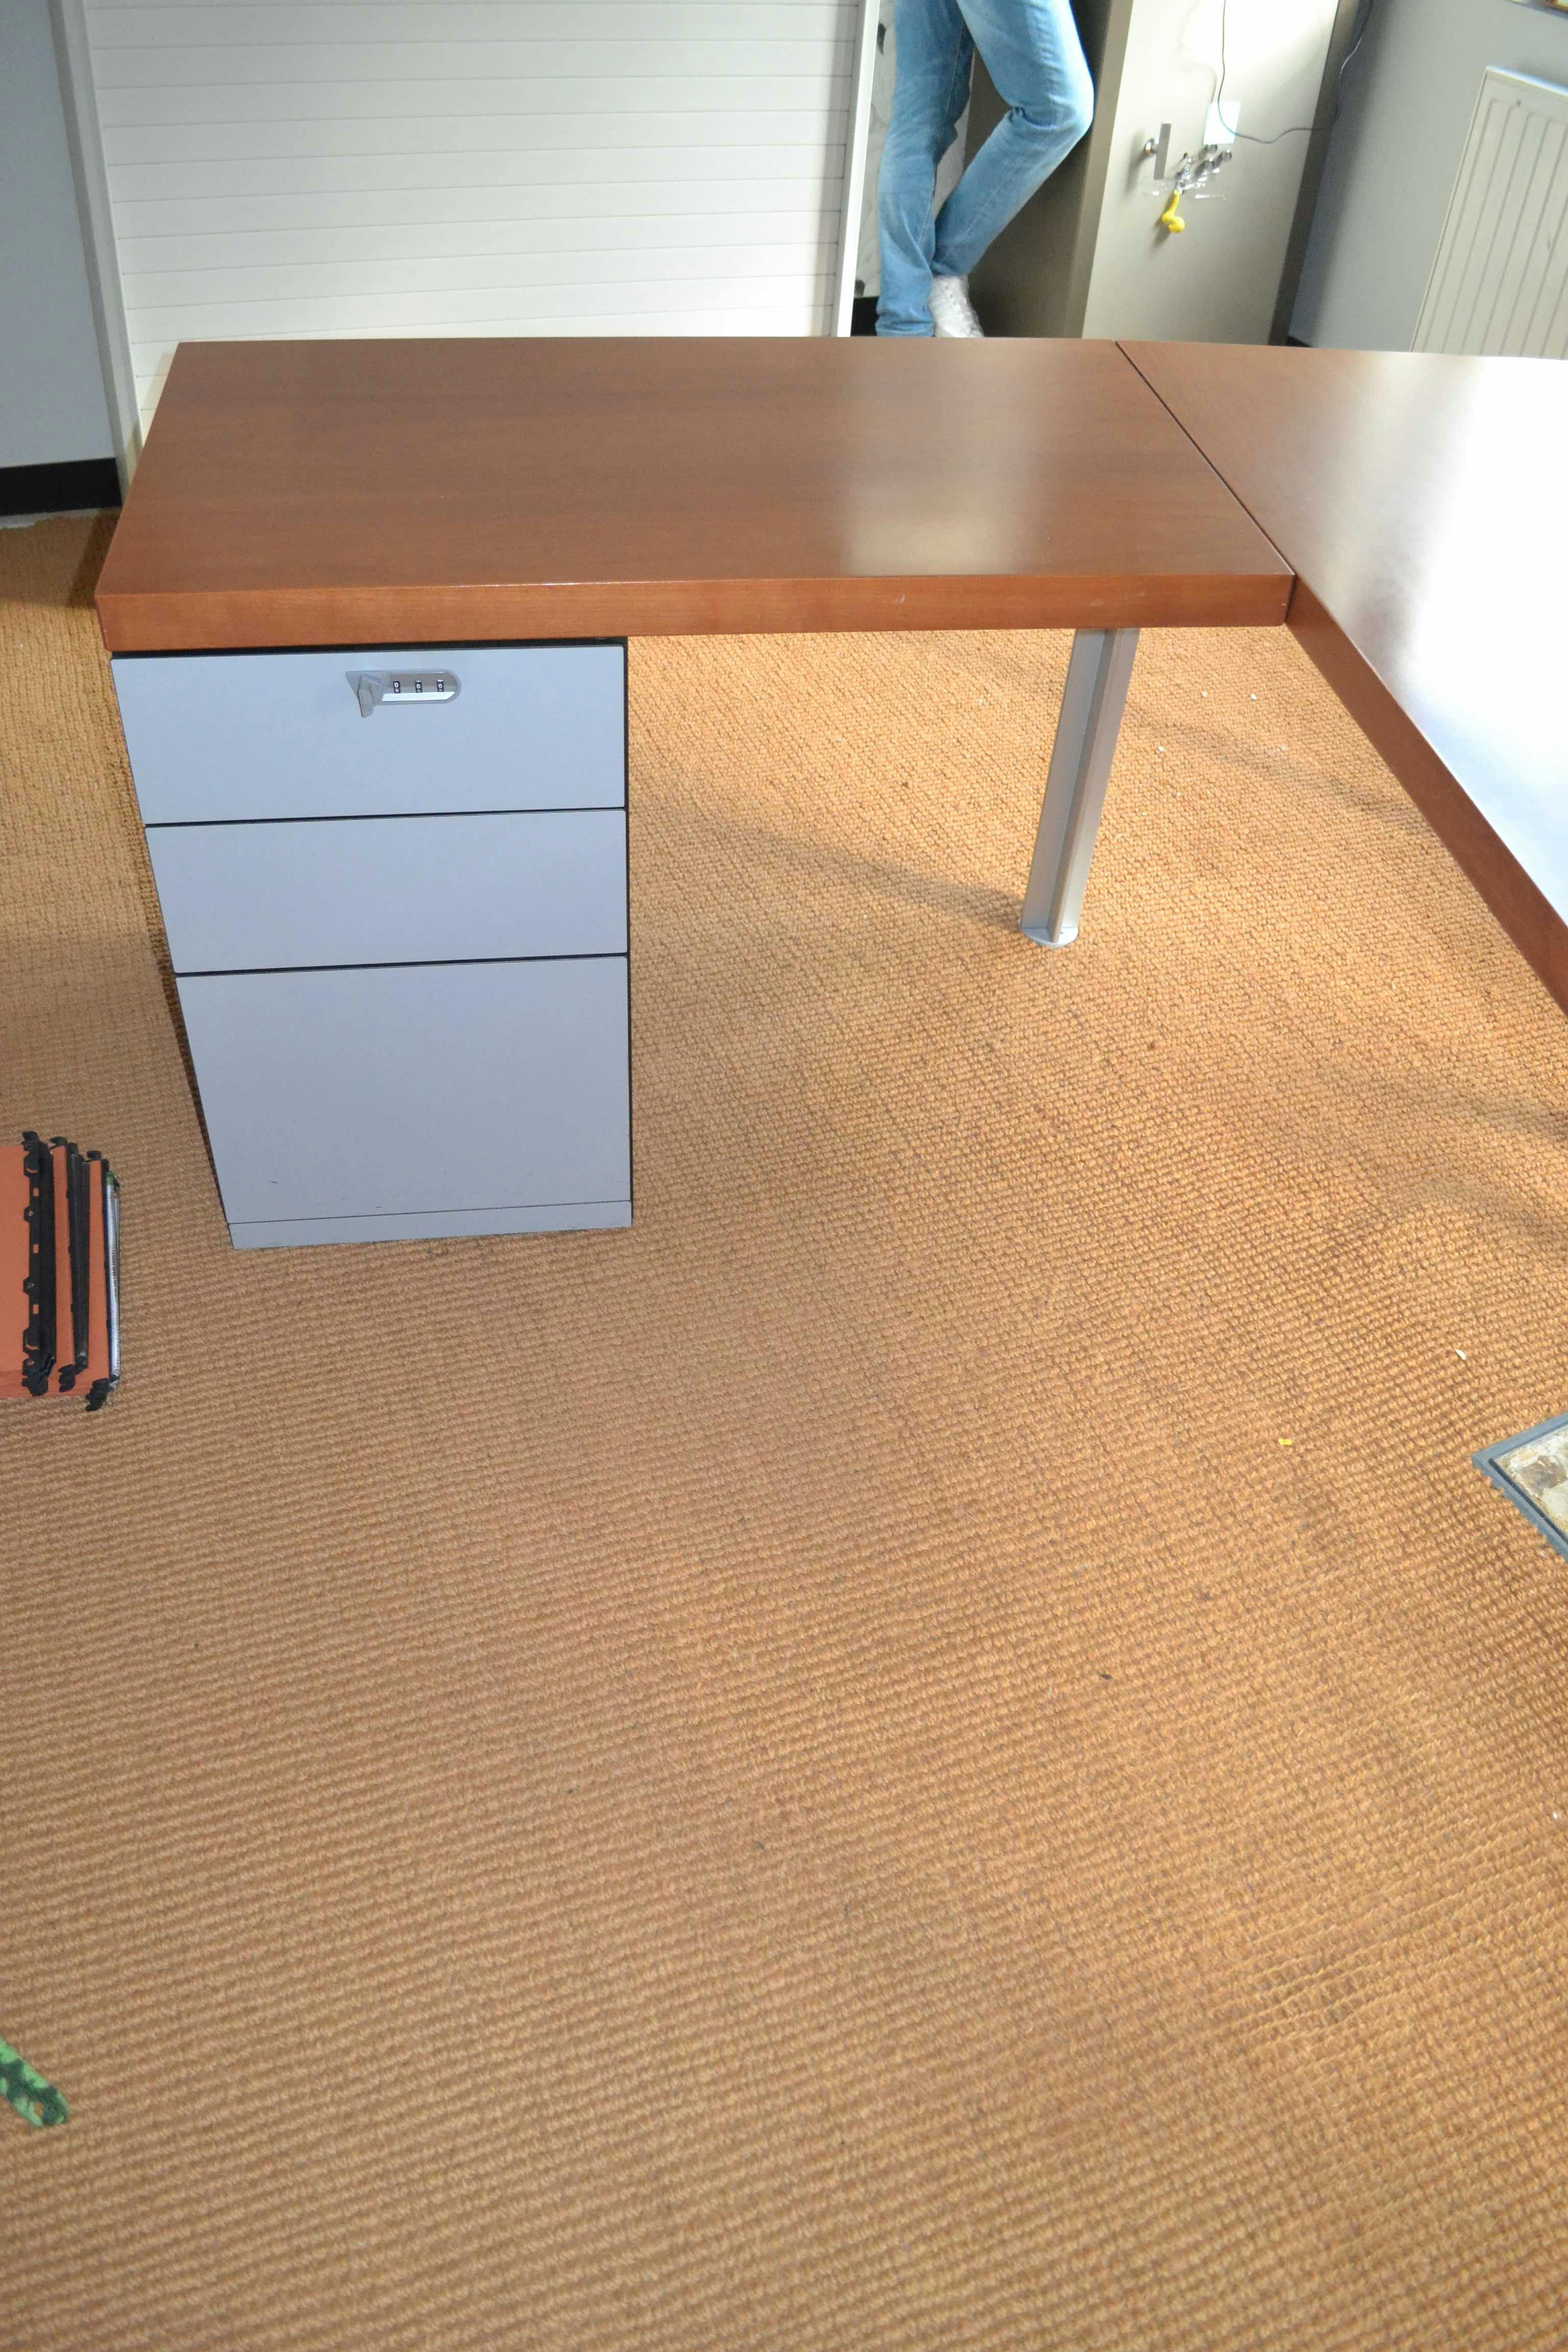 Bureau en L avec lampe / Bureau L Vorm met lamp - Qualité de seconde main "Bureaux" - Relieve Furniture - 3